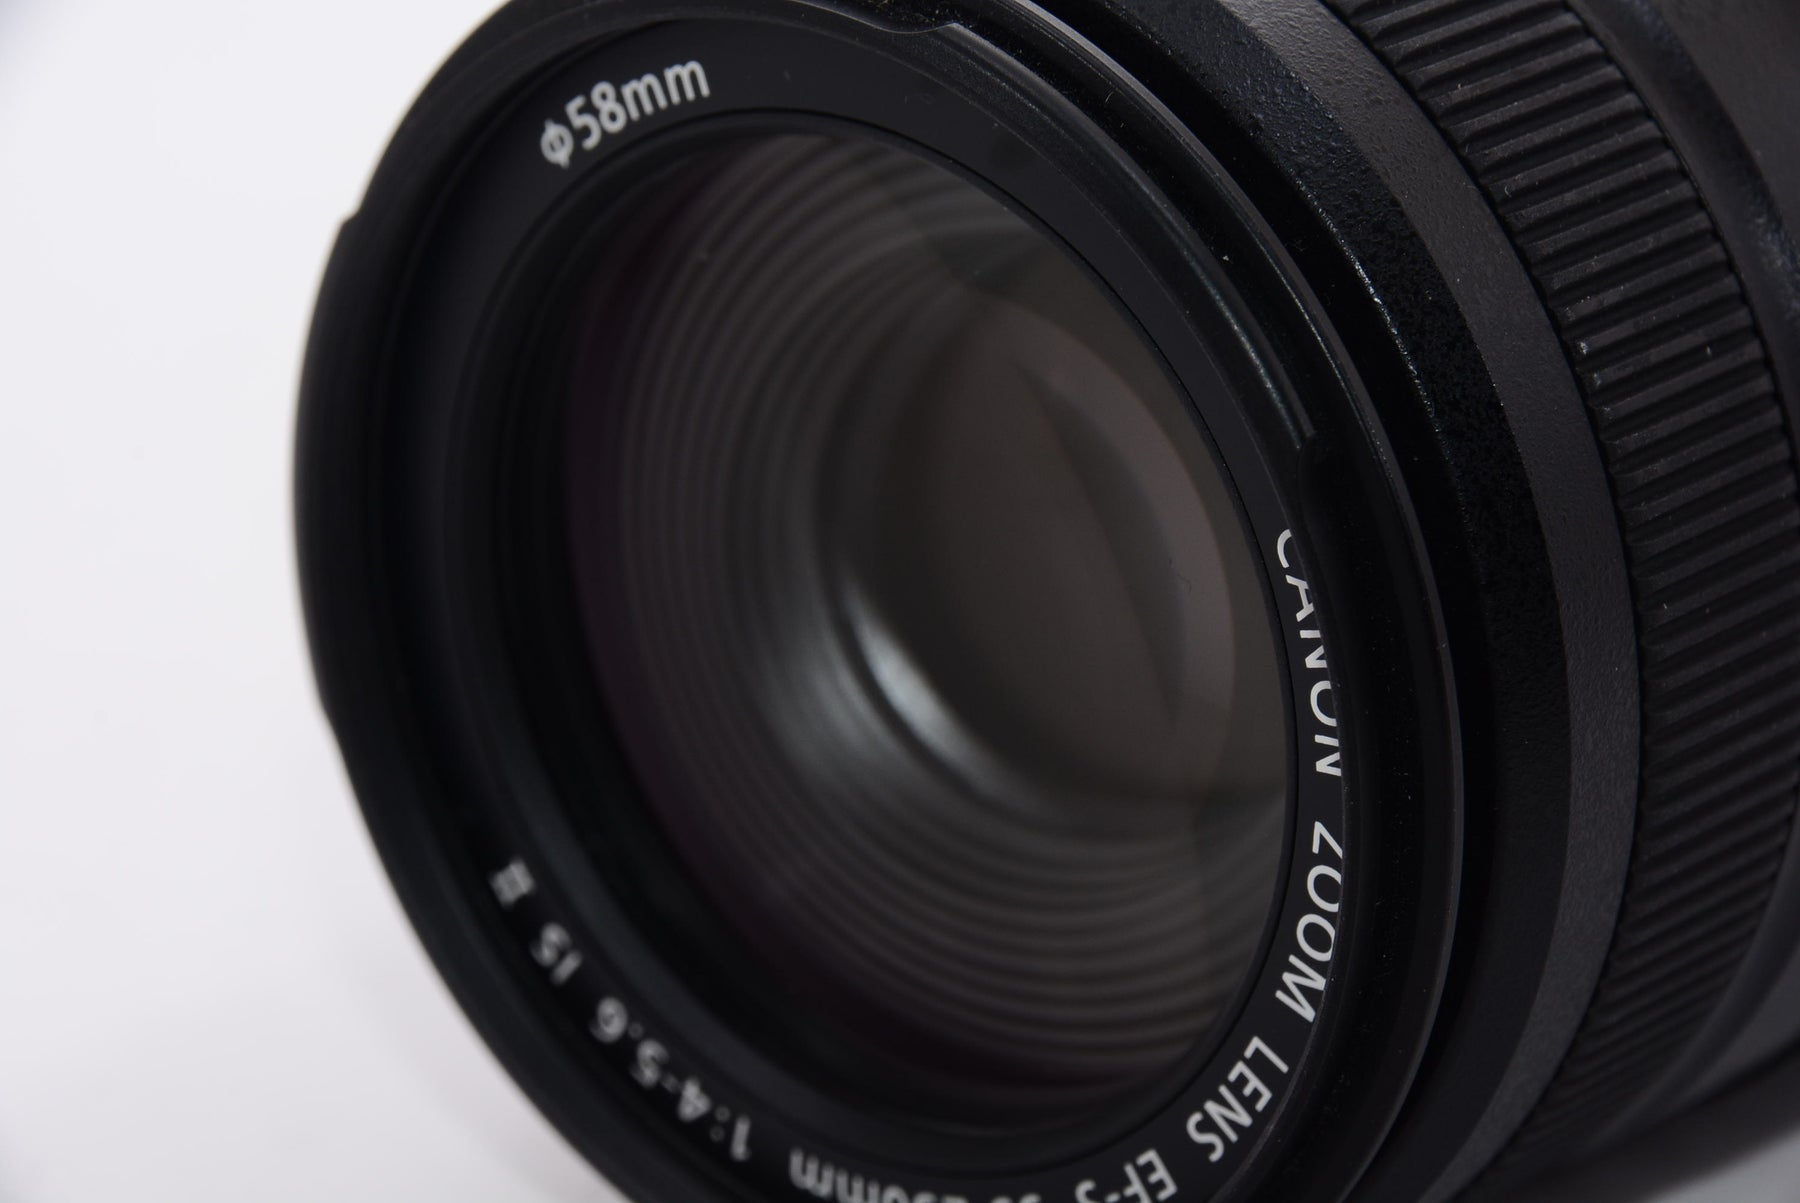 外観特上級】Canon 望遠ズームレンズ EF-S55-250mm F4-5.6 IS II